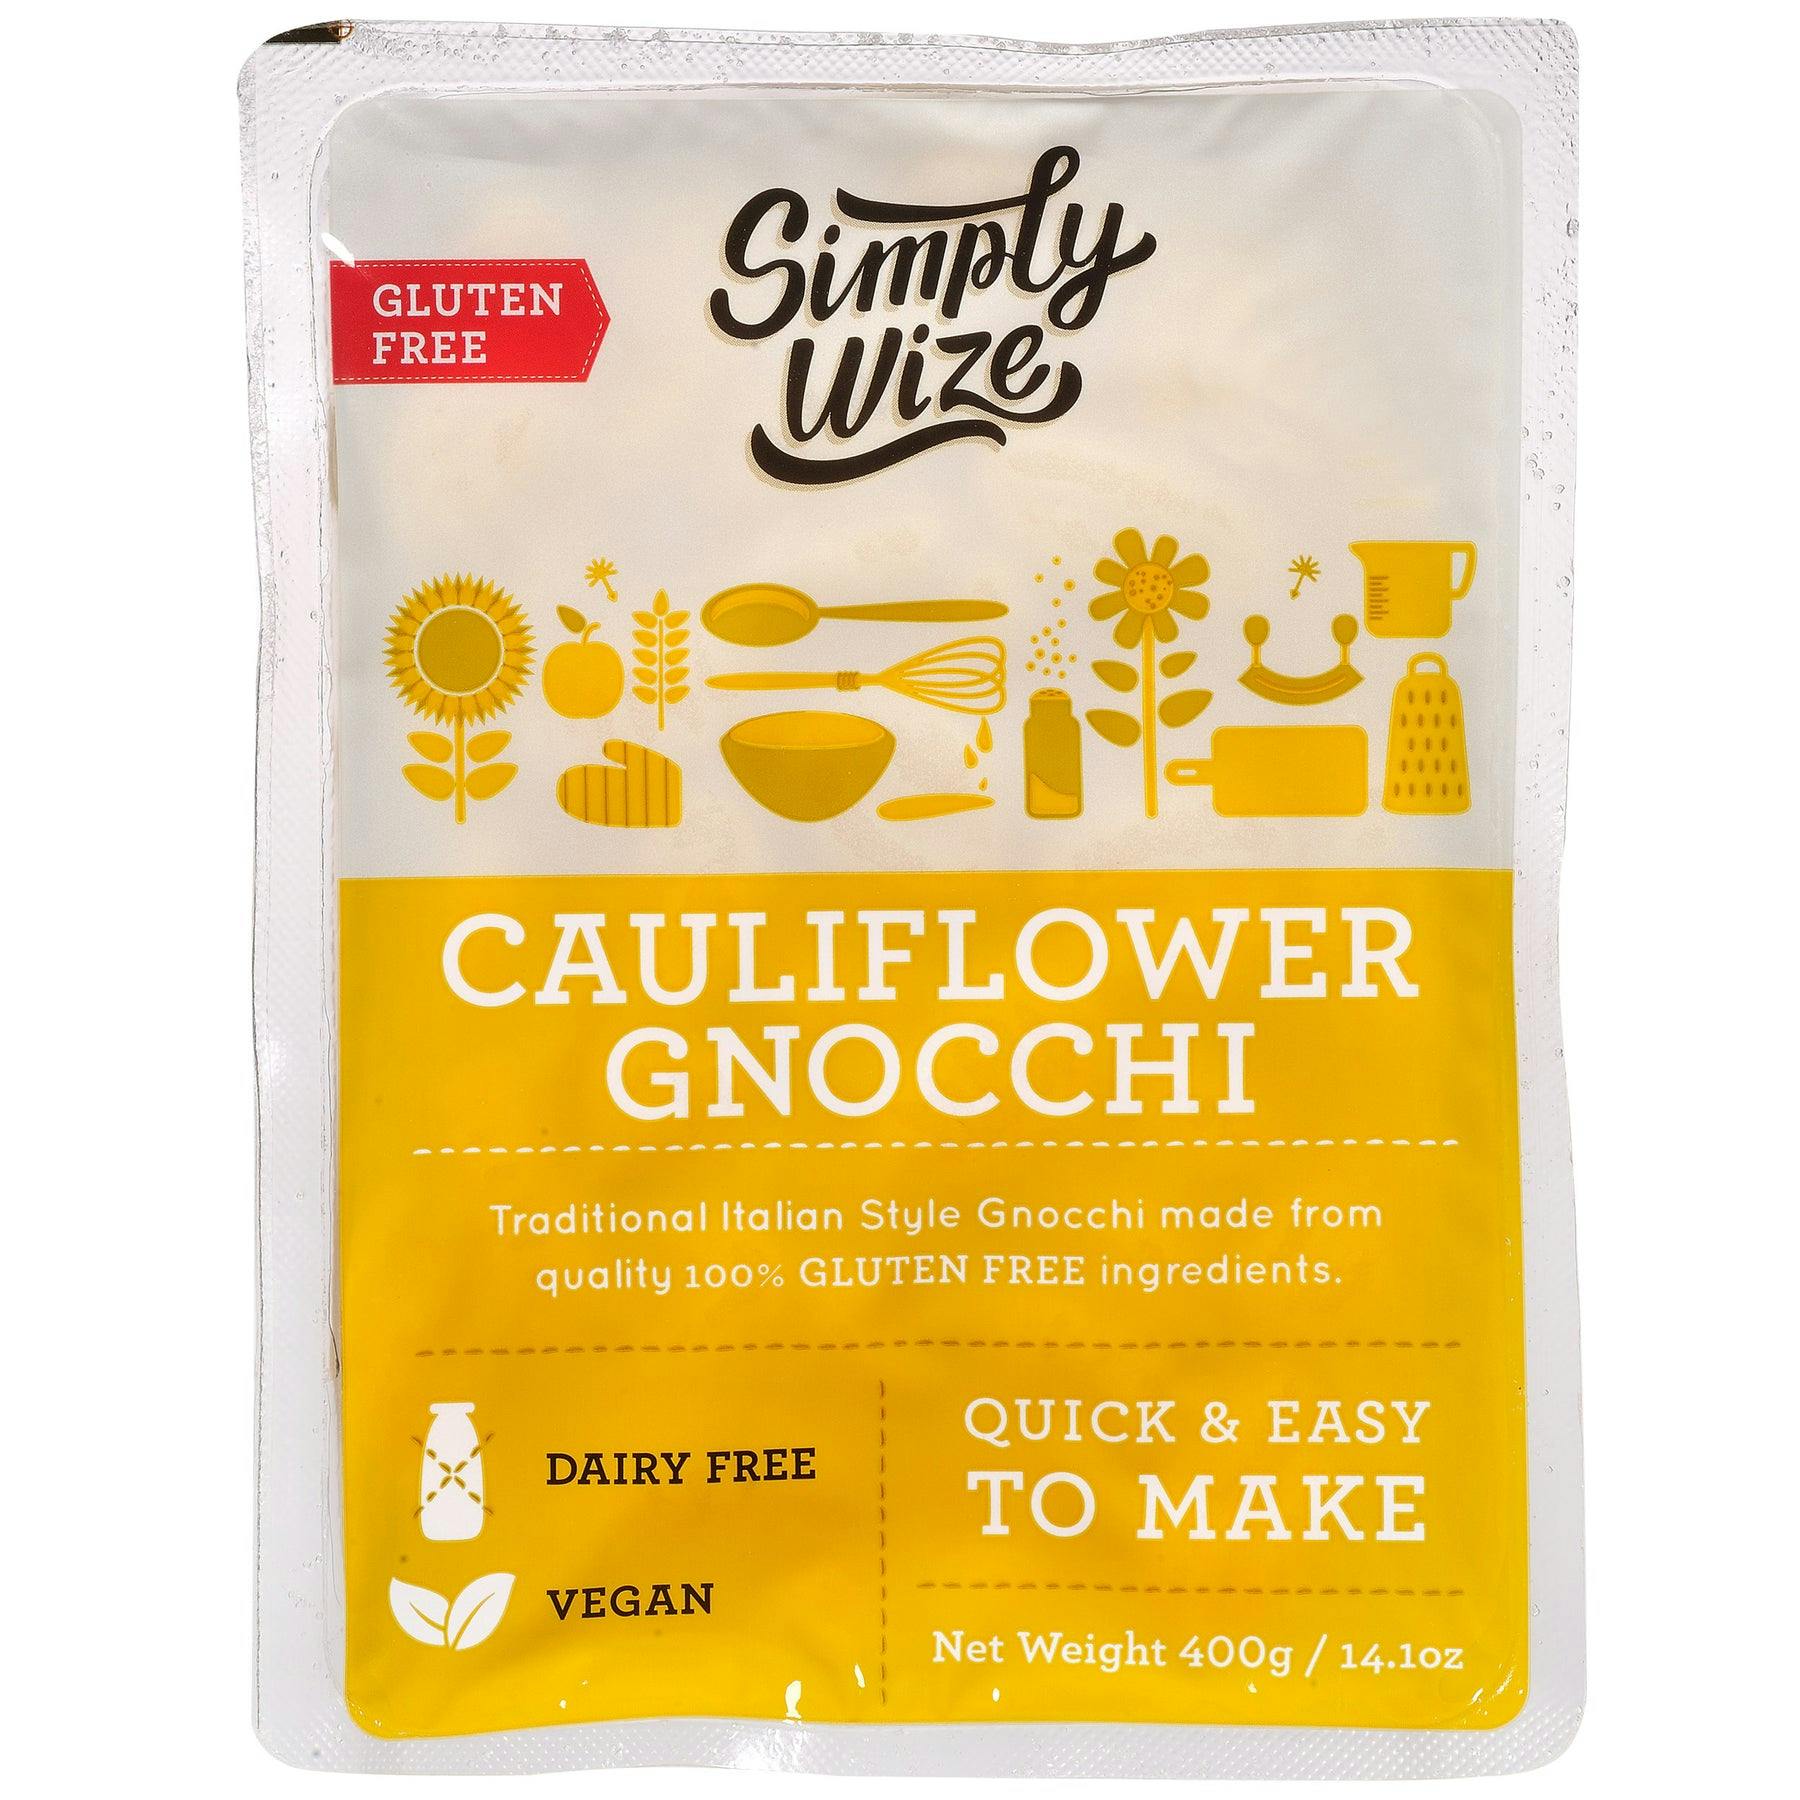 Cauliflower Gnocchi